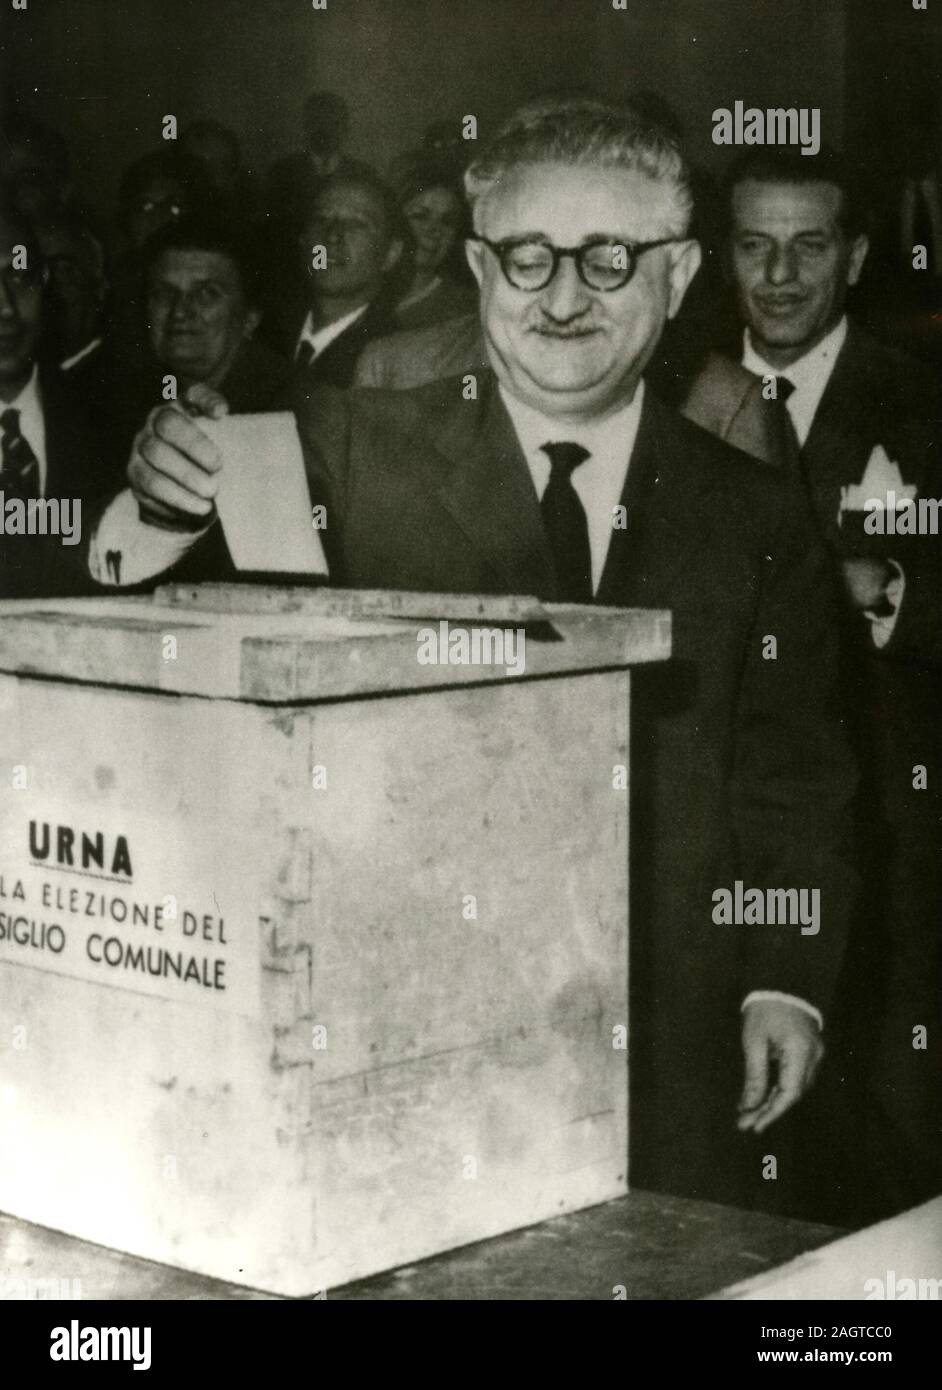 Homme politique italien et président de la République Giovanni Leone déposer son vote, Naples, Italie 1960 Banque D'Images